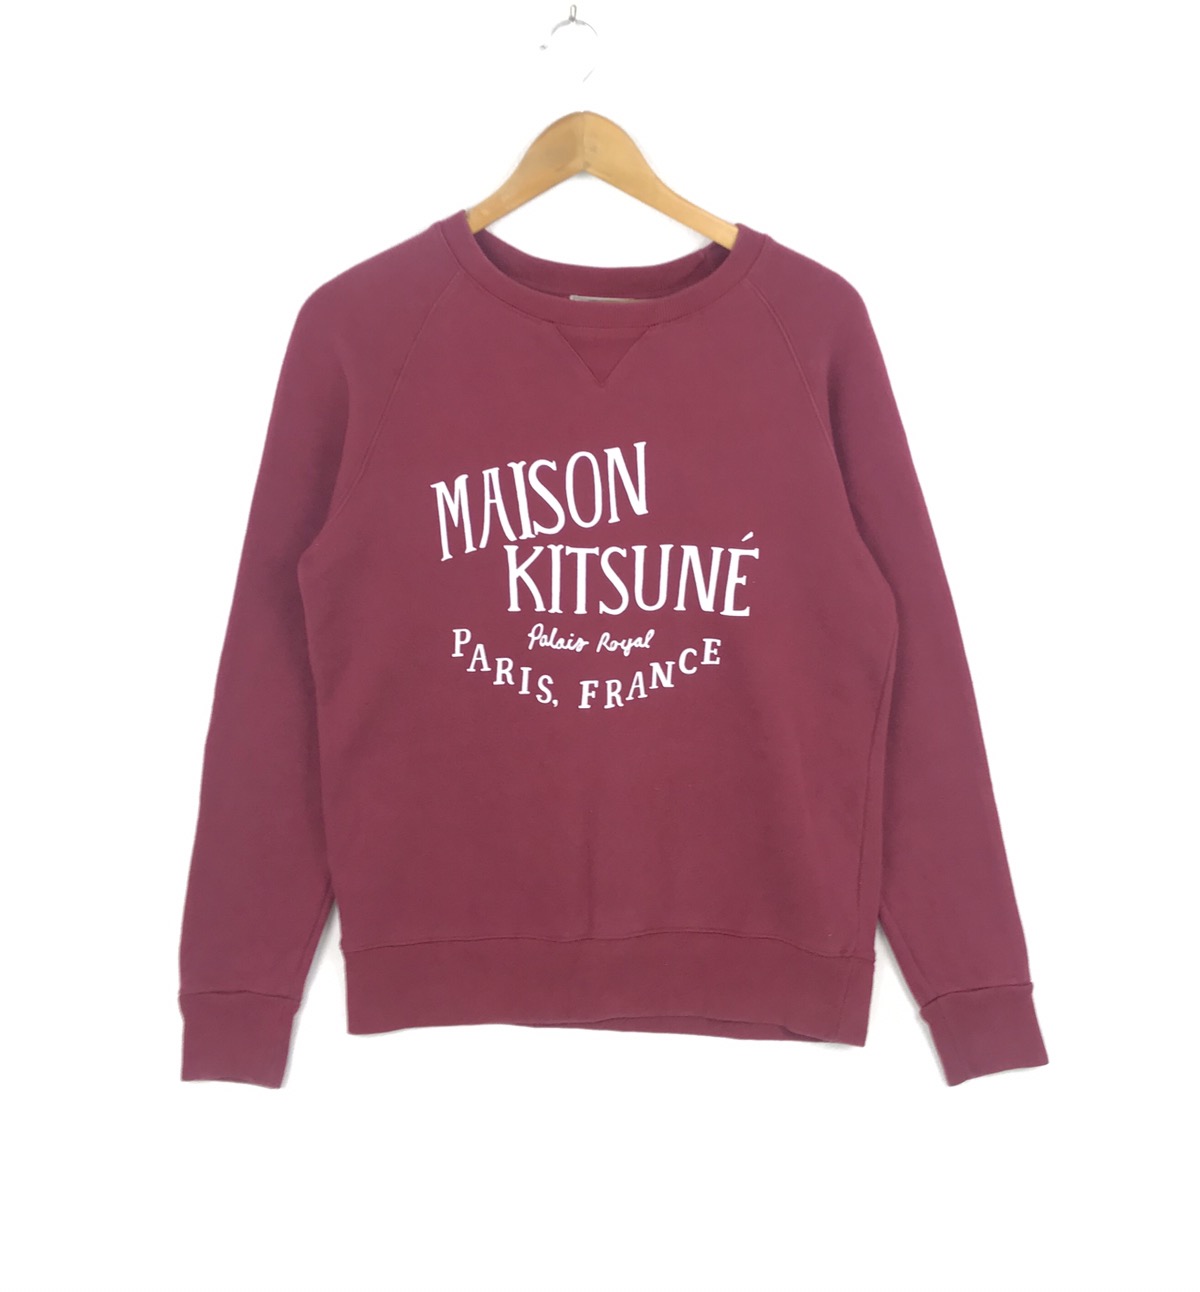 Vintage Maison Kitsune Paris Sweatshirt Spellout Sweater - 1